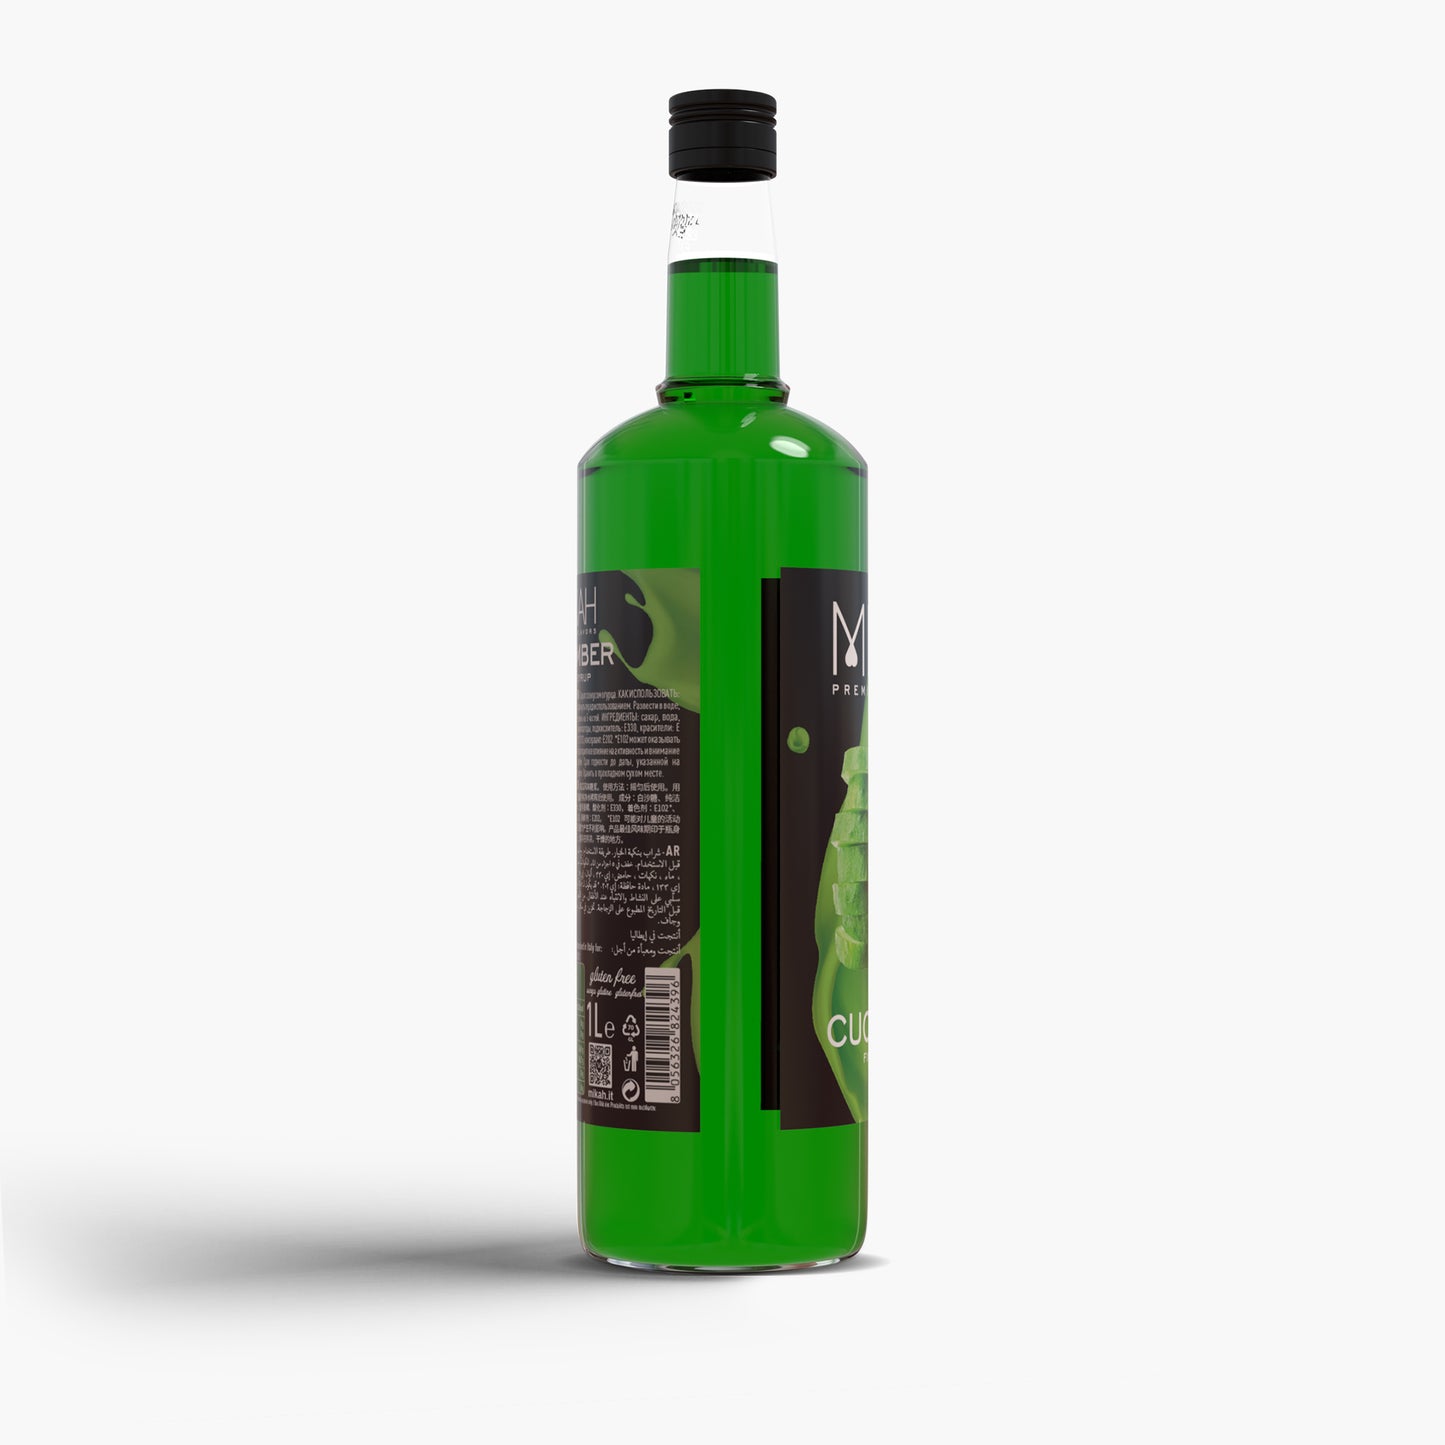 
                  
                    Syrup Mikah Premium Flavors - Cucumber 1L
                  
                